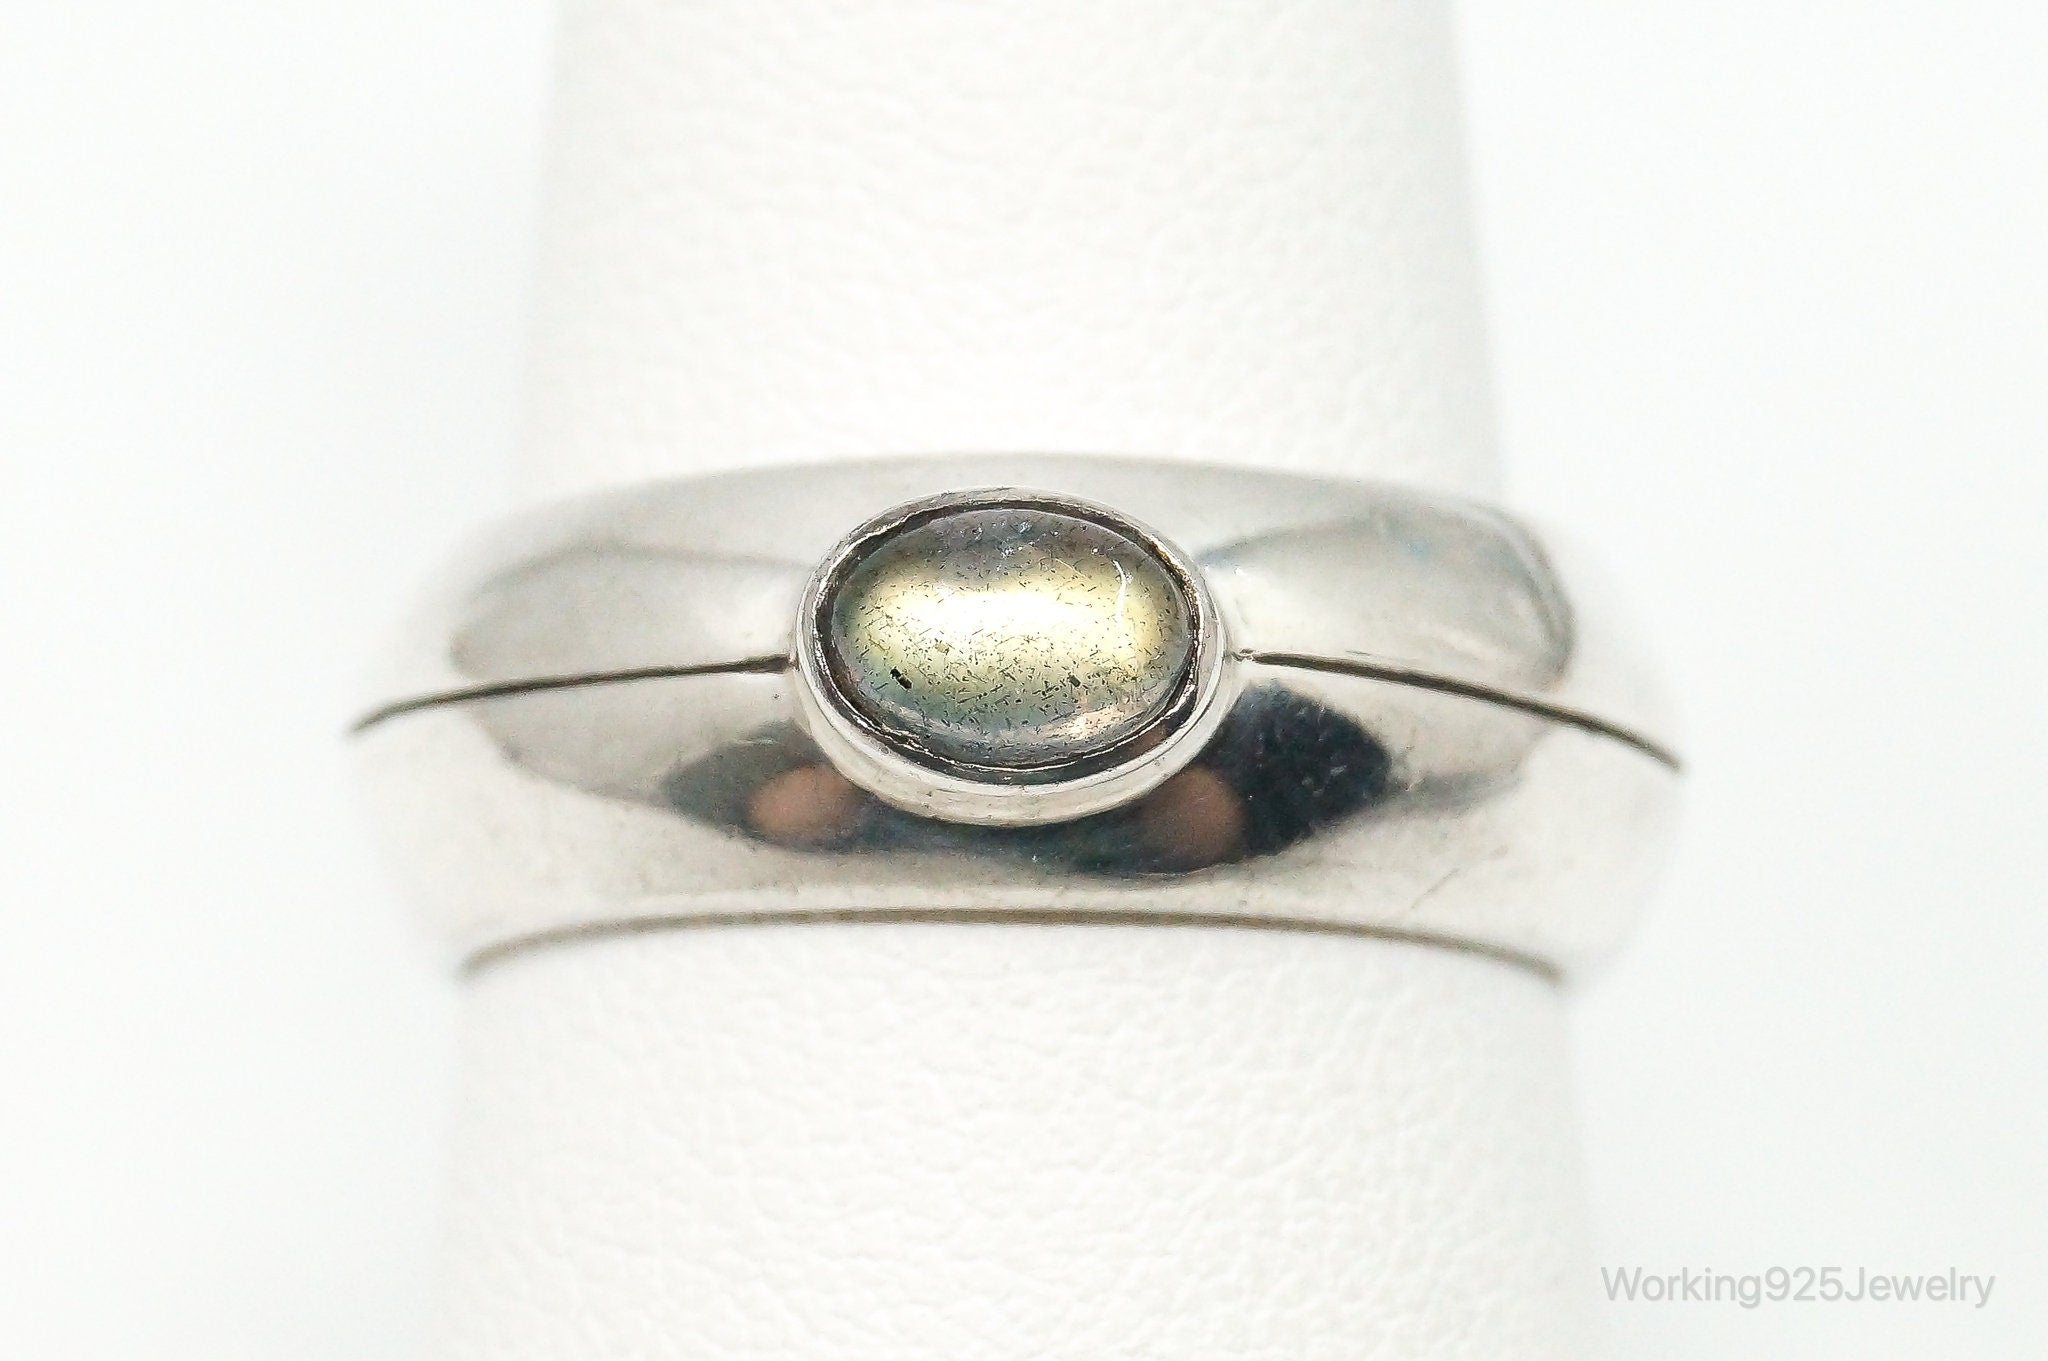 Vintage Modernist Labradorite Sterling Silver Ring - Size 7.75